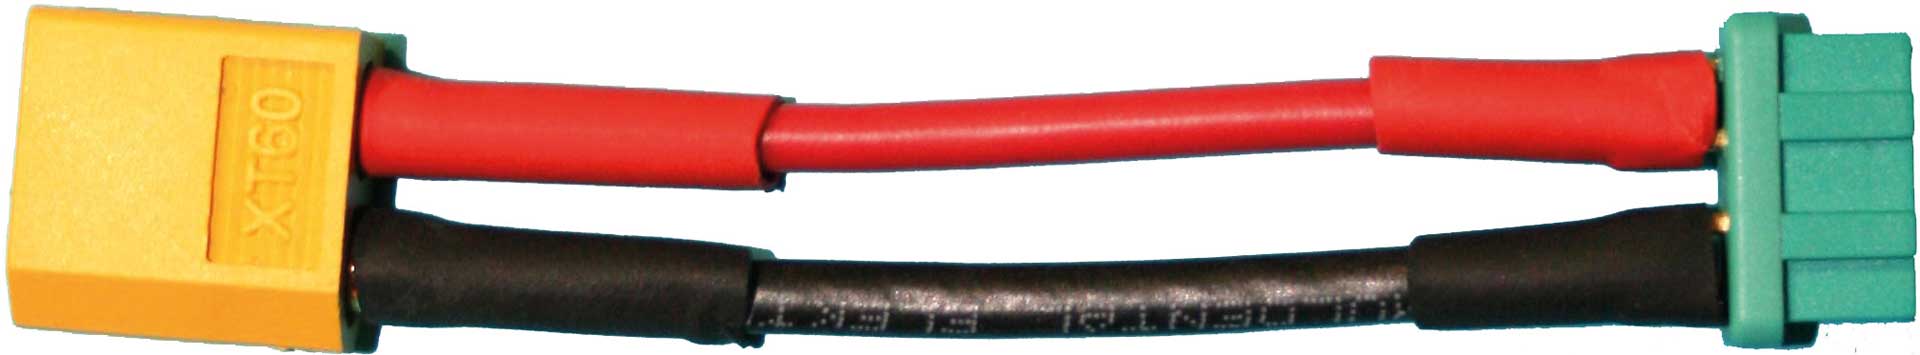 PLANET-HOBBY Câble adaptateur XT60 mâle vers MPX-D- Prise femelle 1pc.